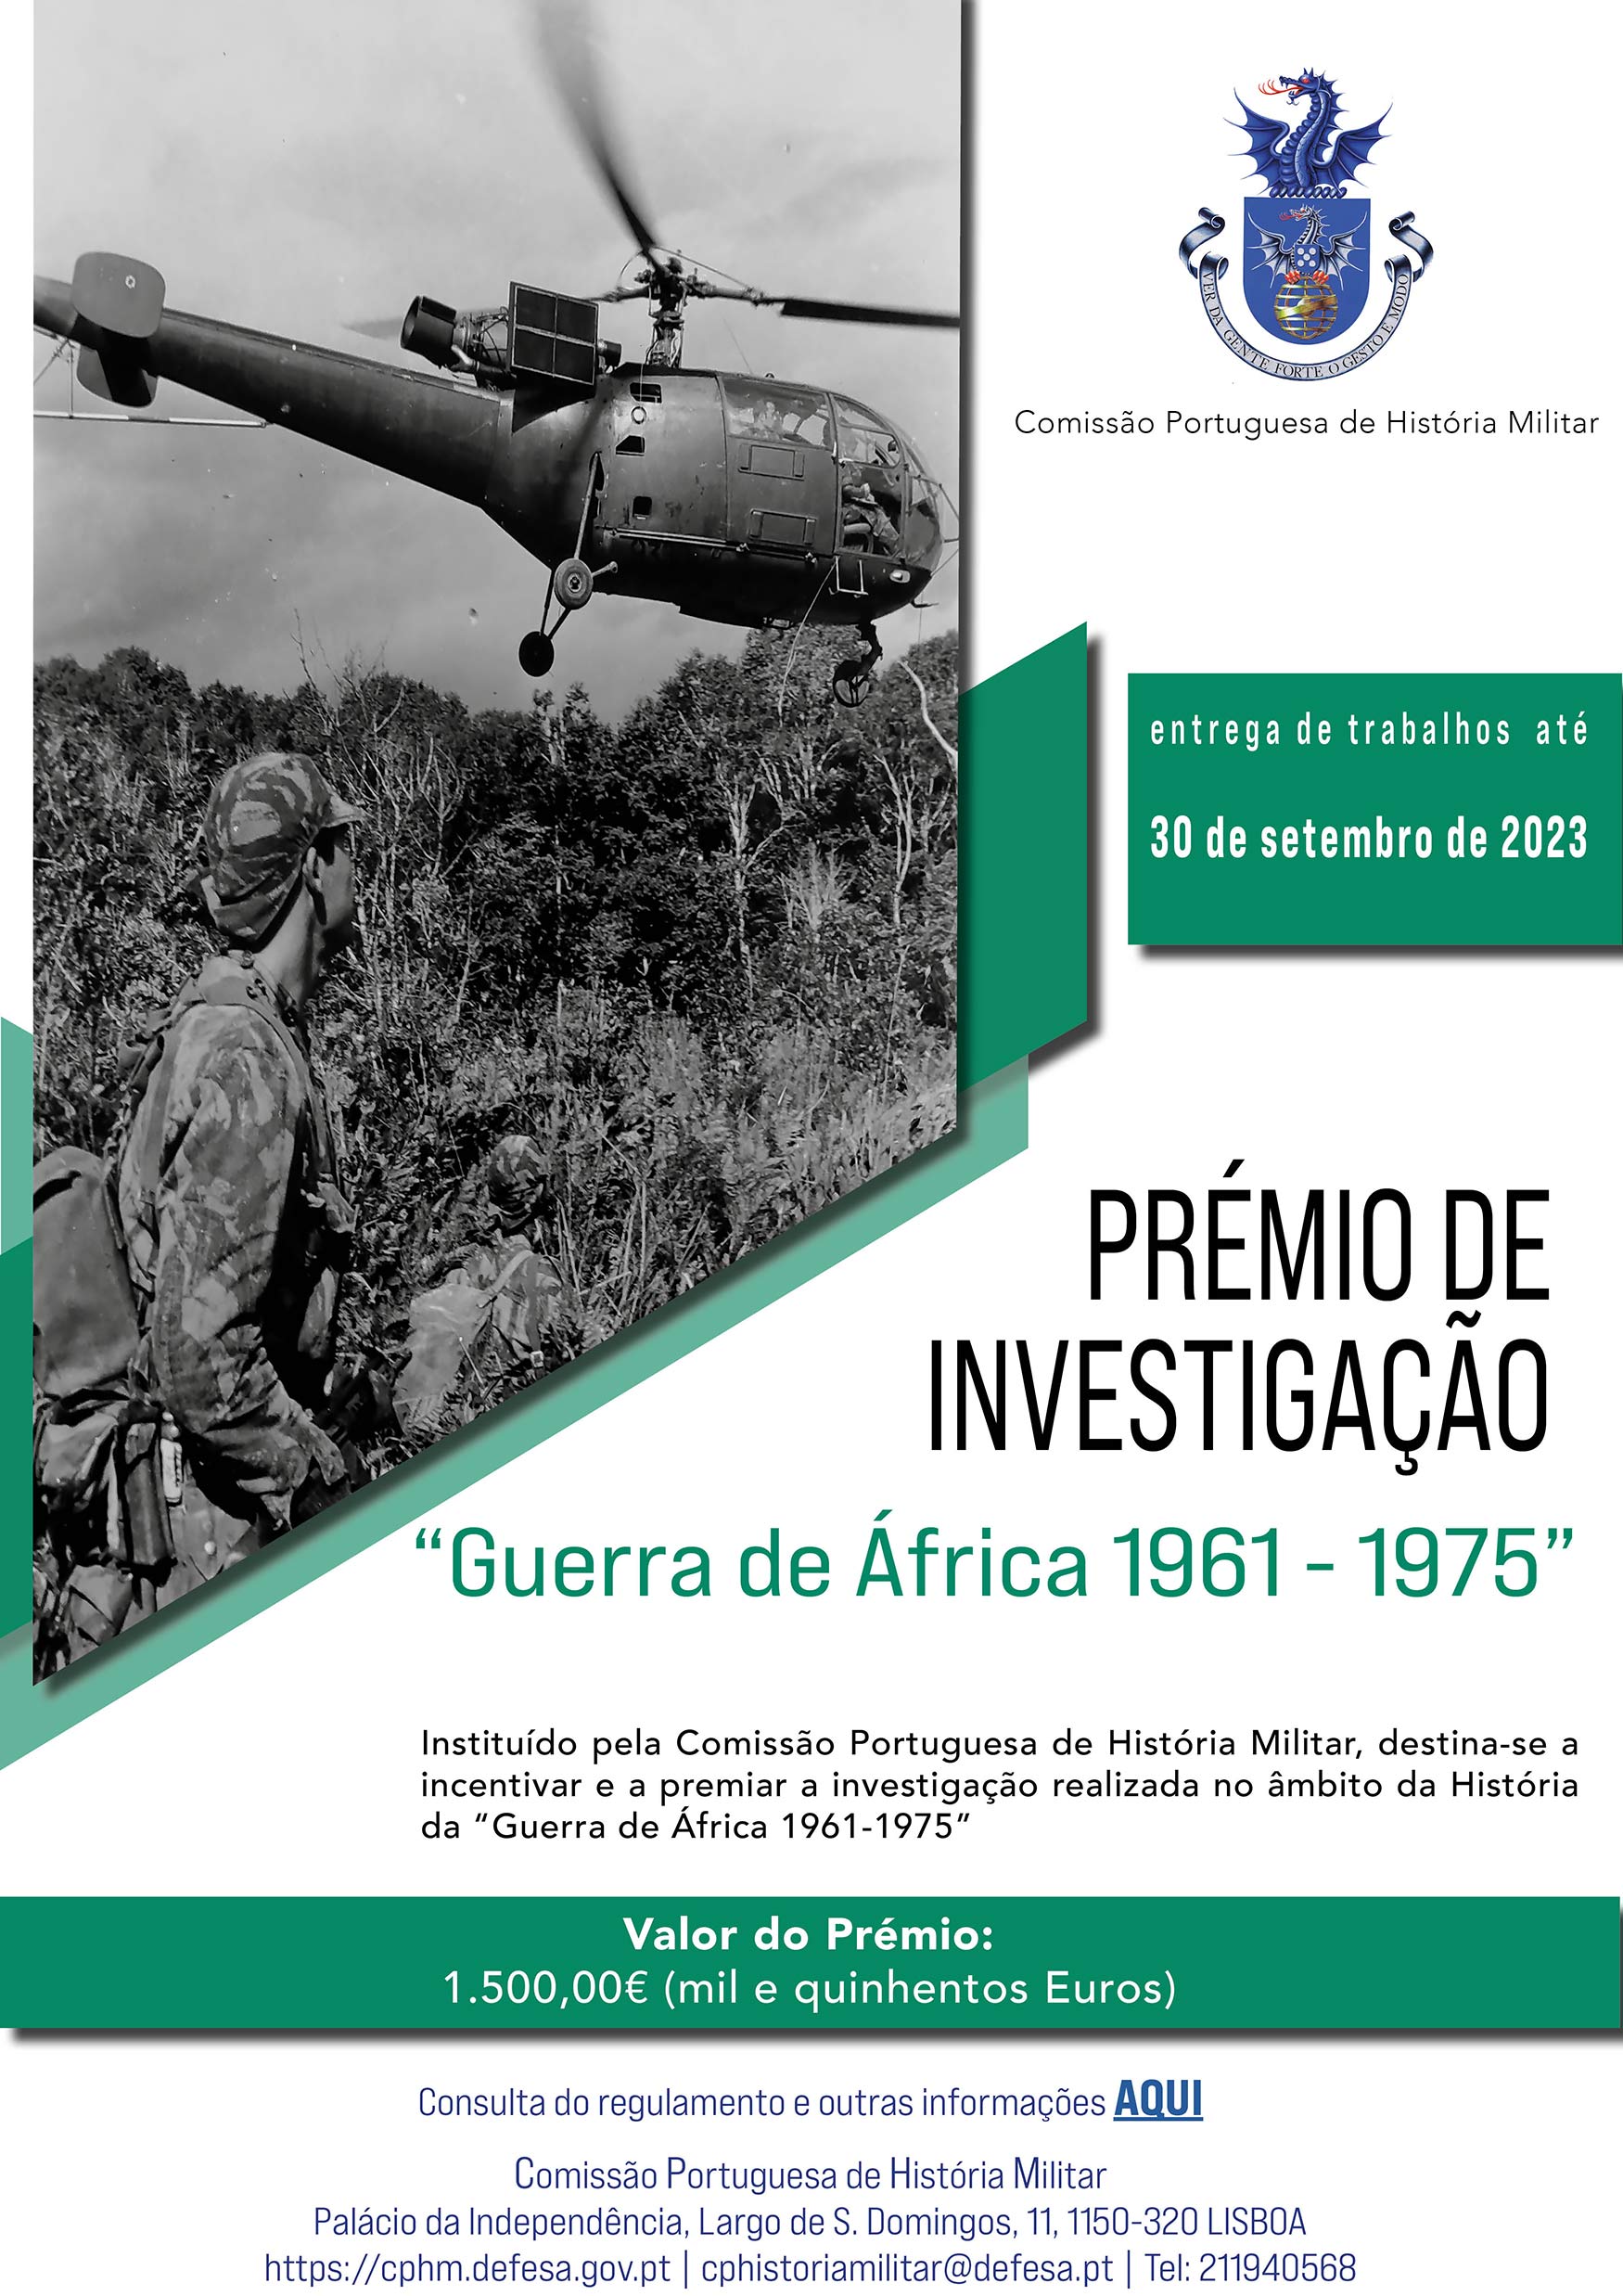 Prémio de Investigação "Guerra de África 1961-1975"